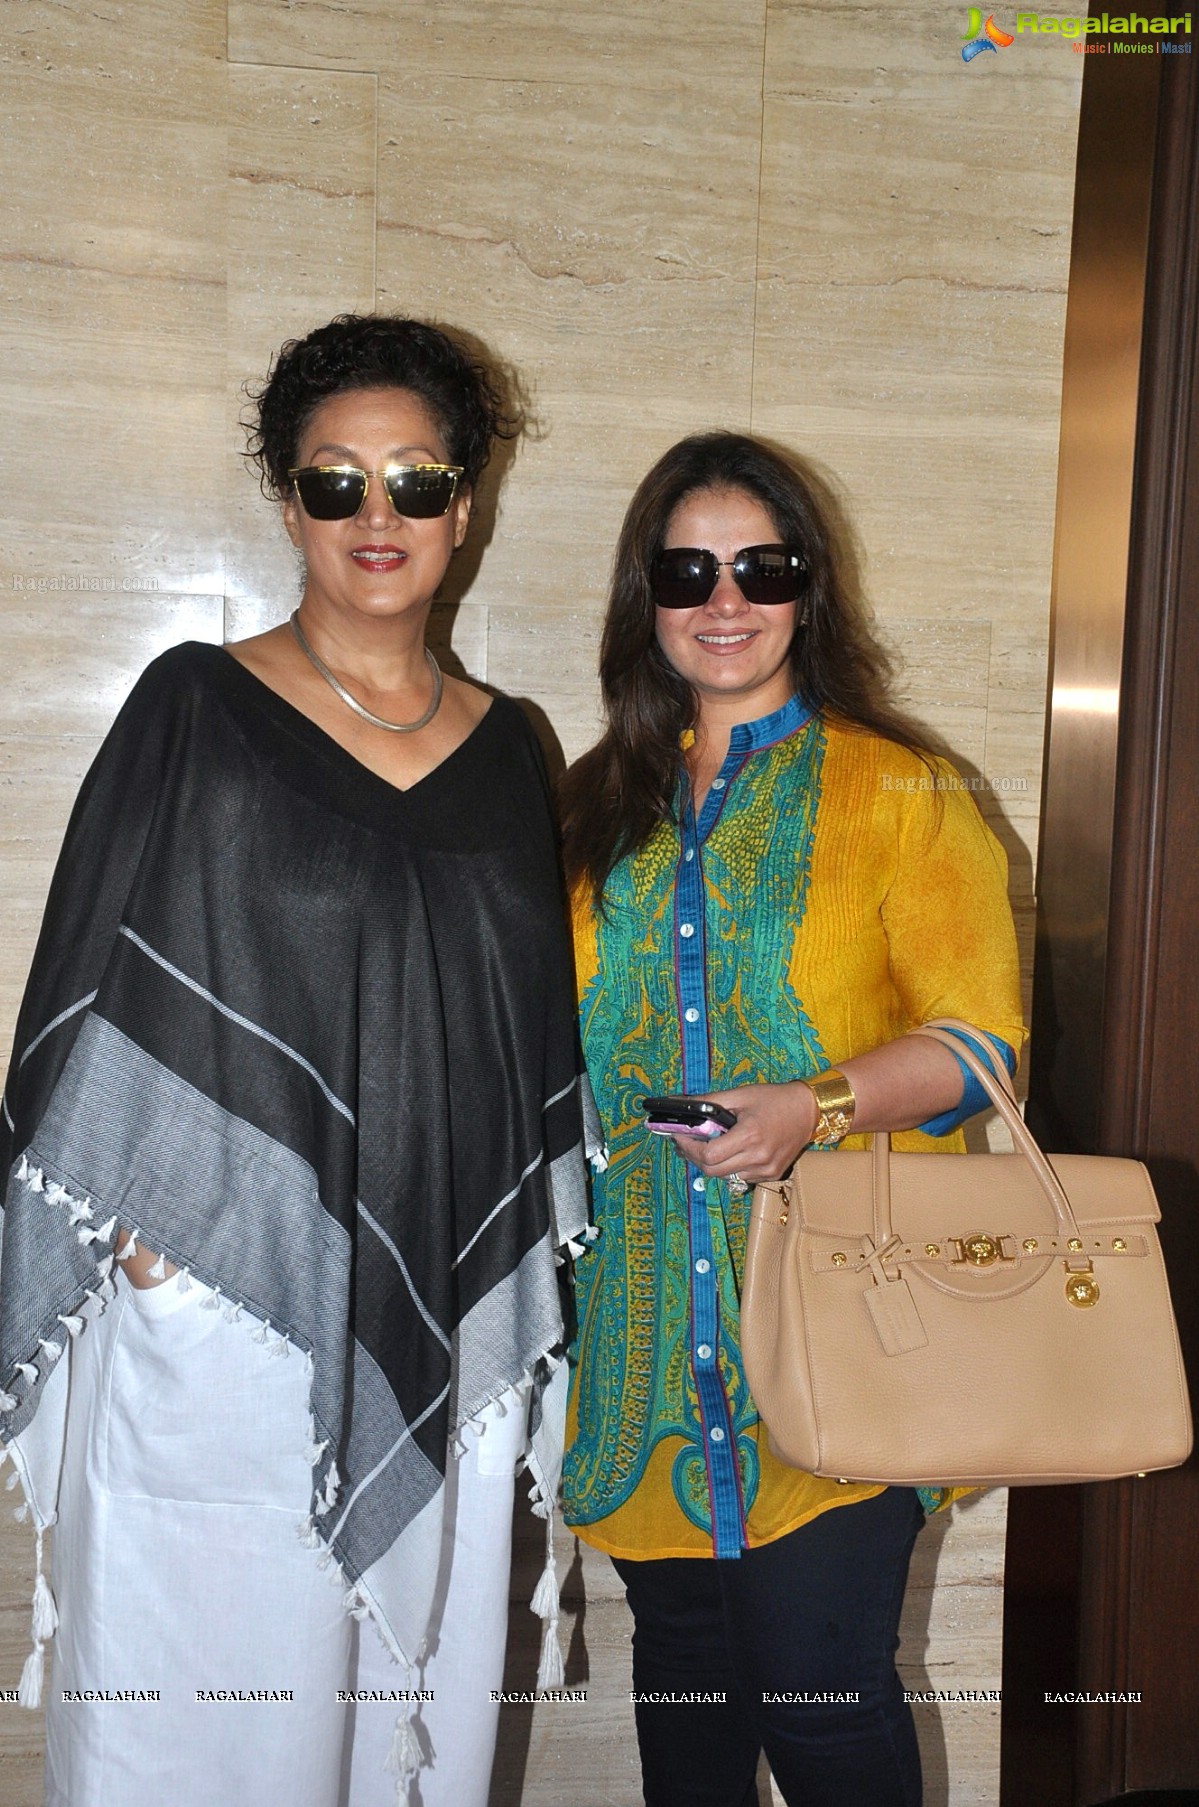 Rouble Nagi and Sushmita Sen to co-host power luncheon for women in Mumbai